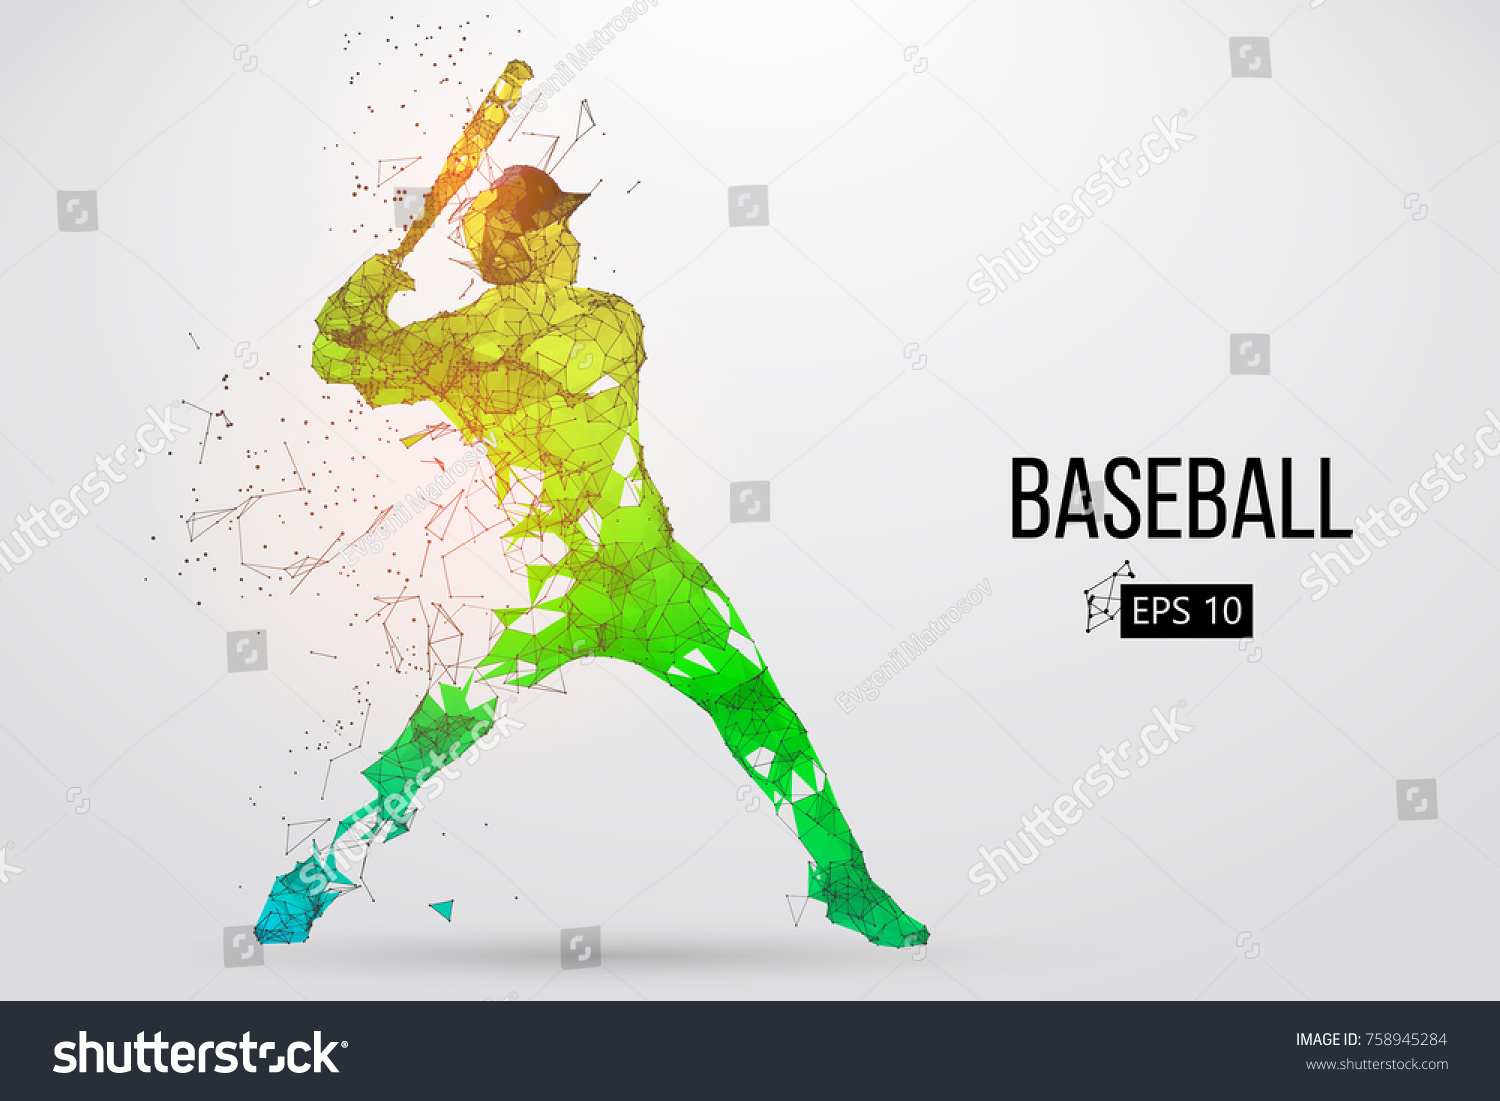 野球選手のシルエット 個別のレイヤー上のドット 線 三角形 テキスト 色の効果 背景は 1回のクリックで変更できます ベクターイラスト のベクター画像素材 ロイヤリティフリー